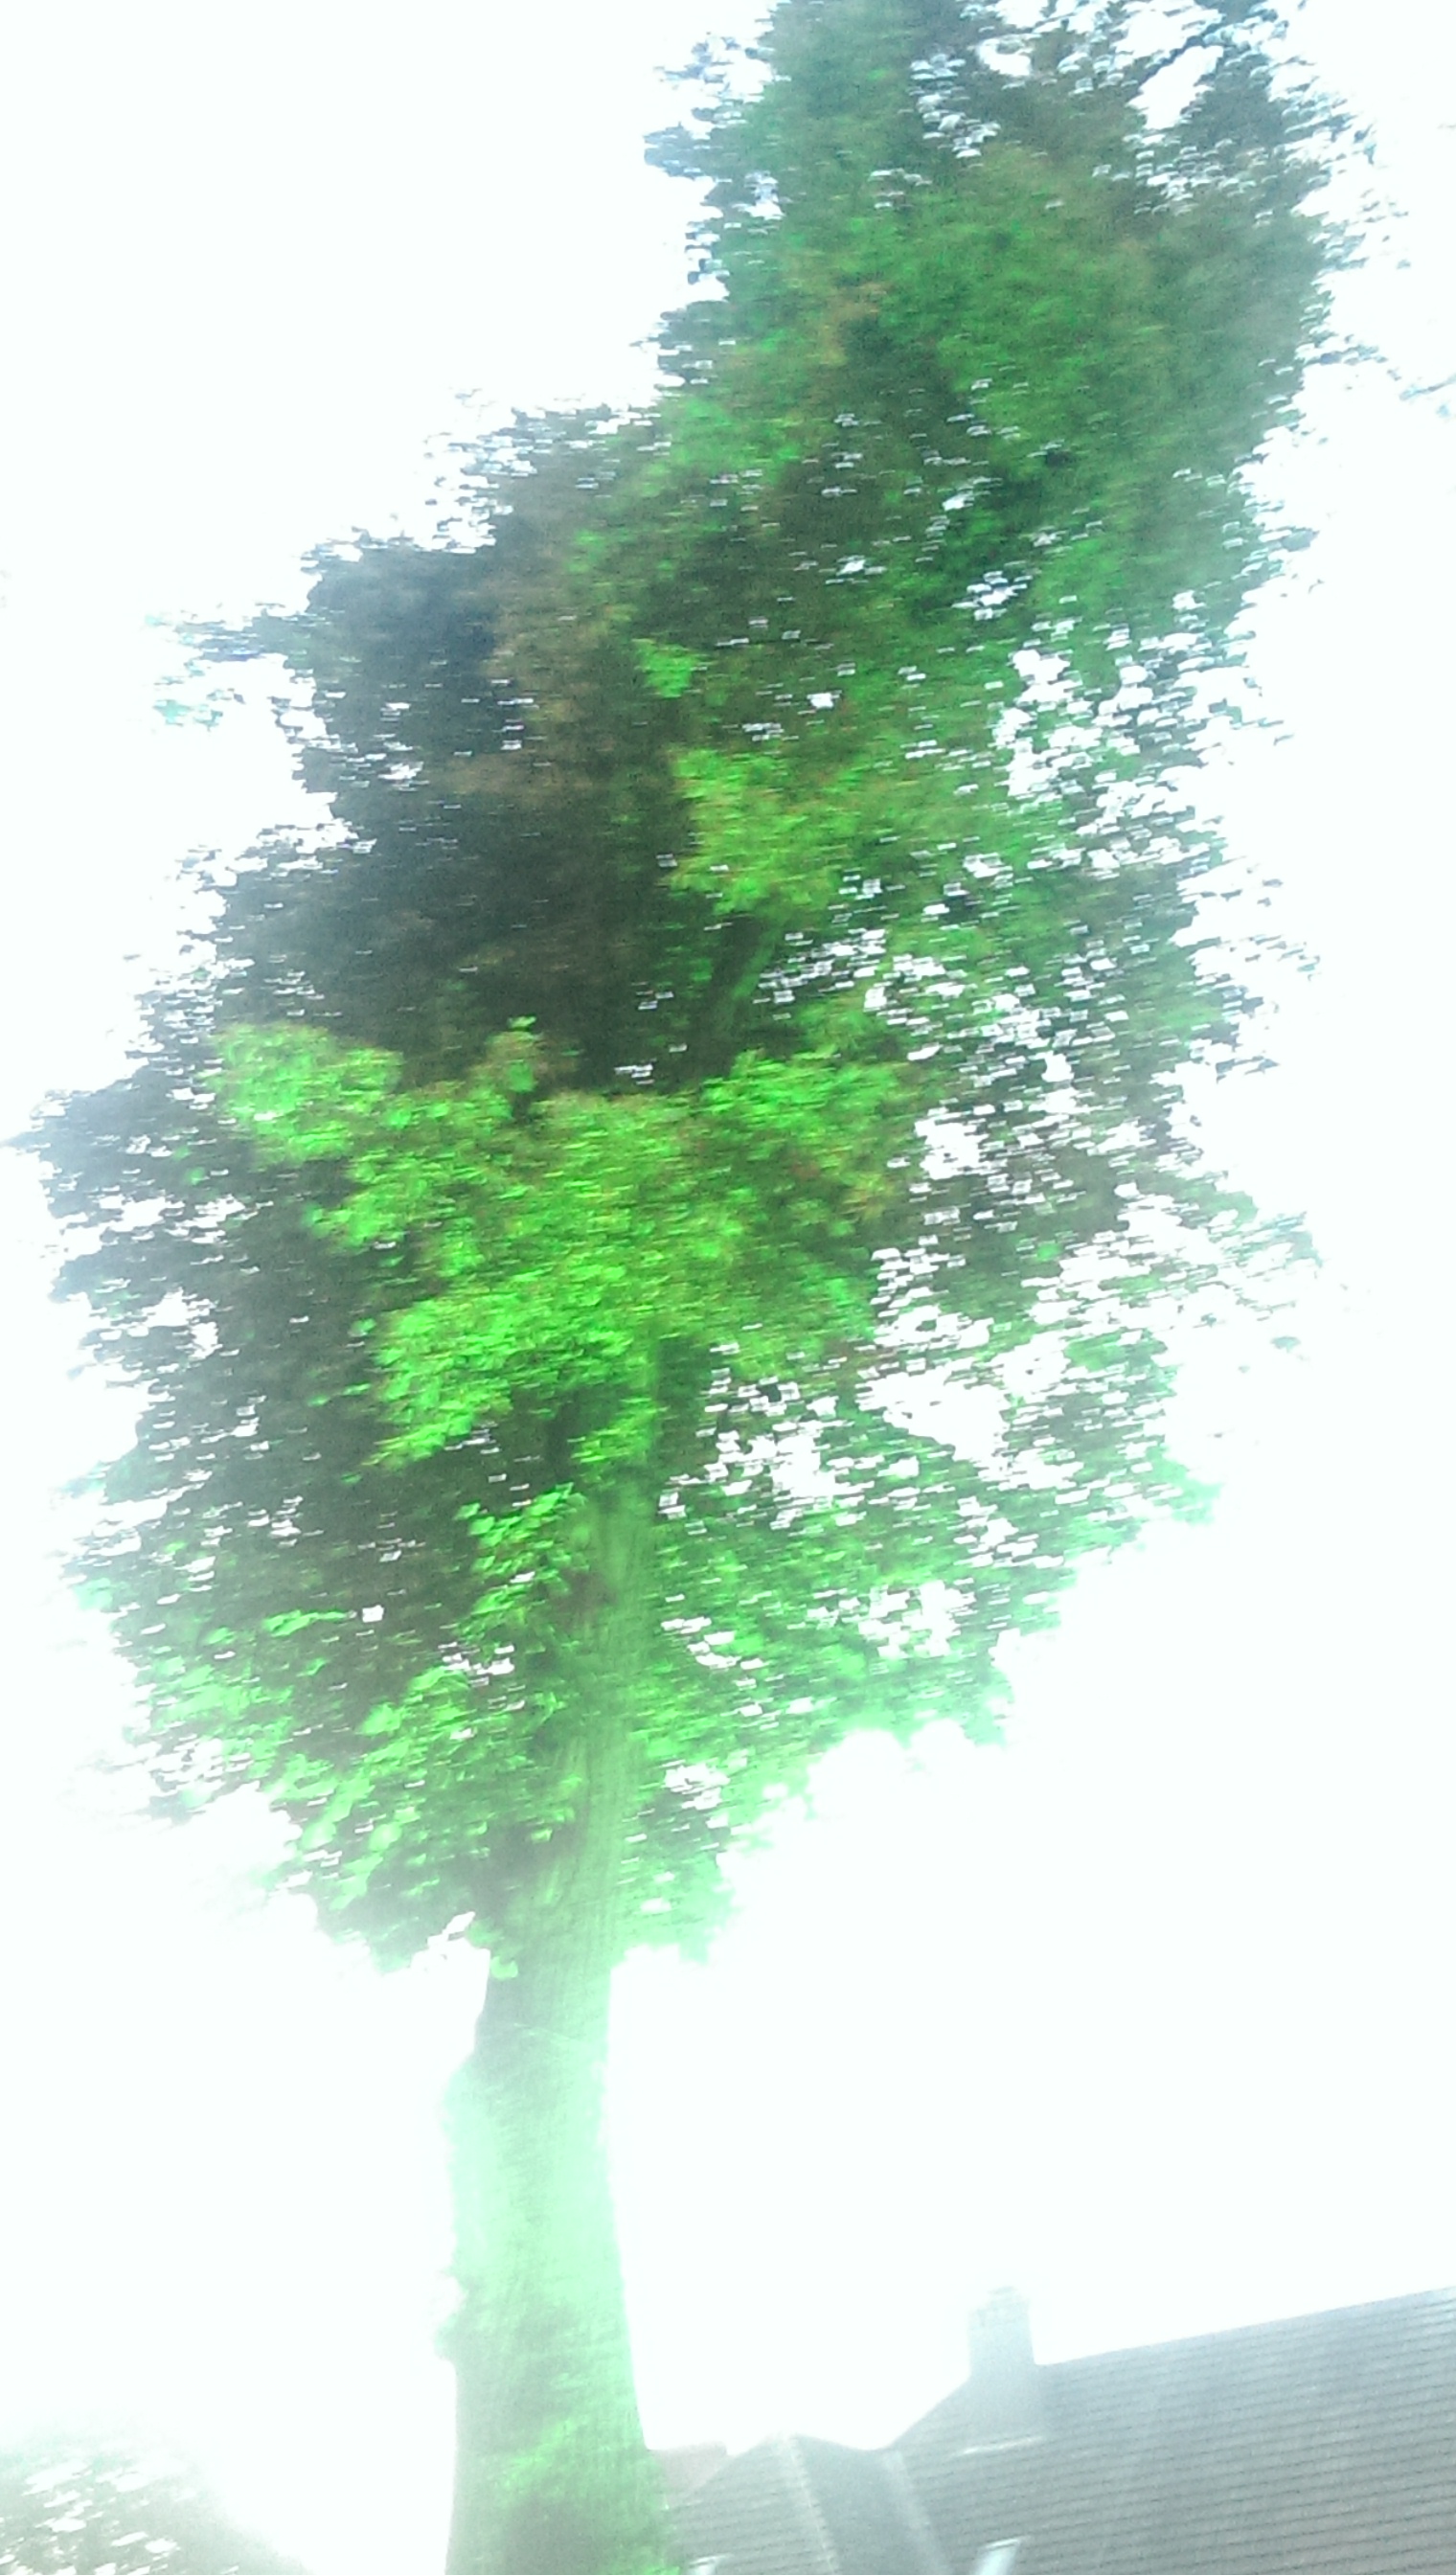 es ist zwar blue night, aber zwei Bäume waren auch in grün angestrahlt